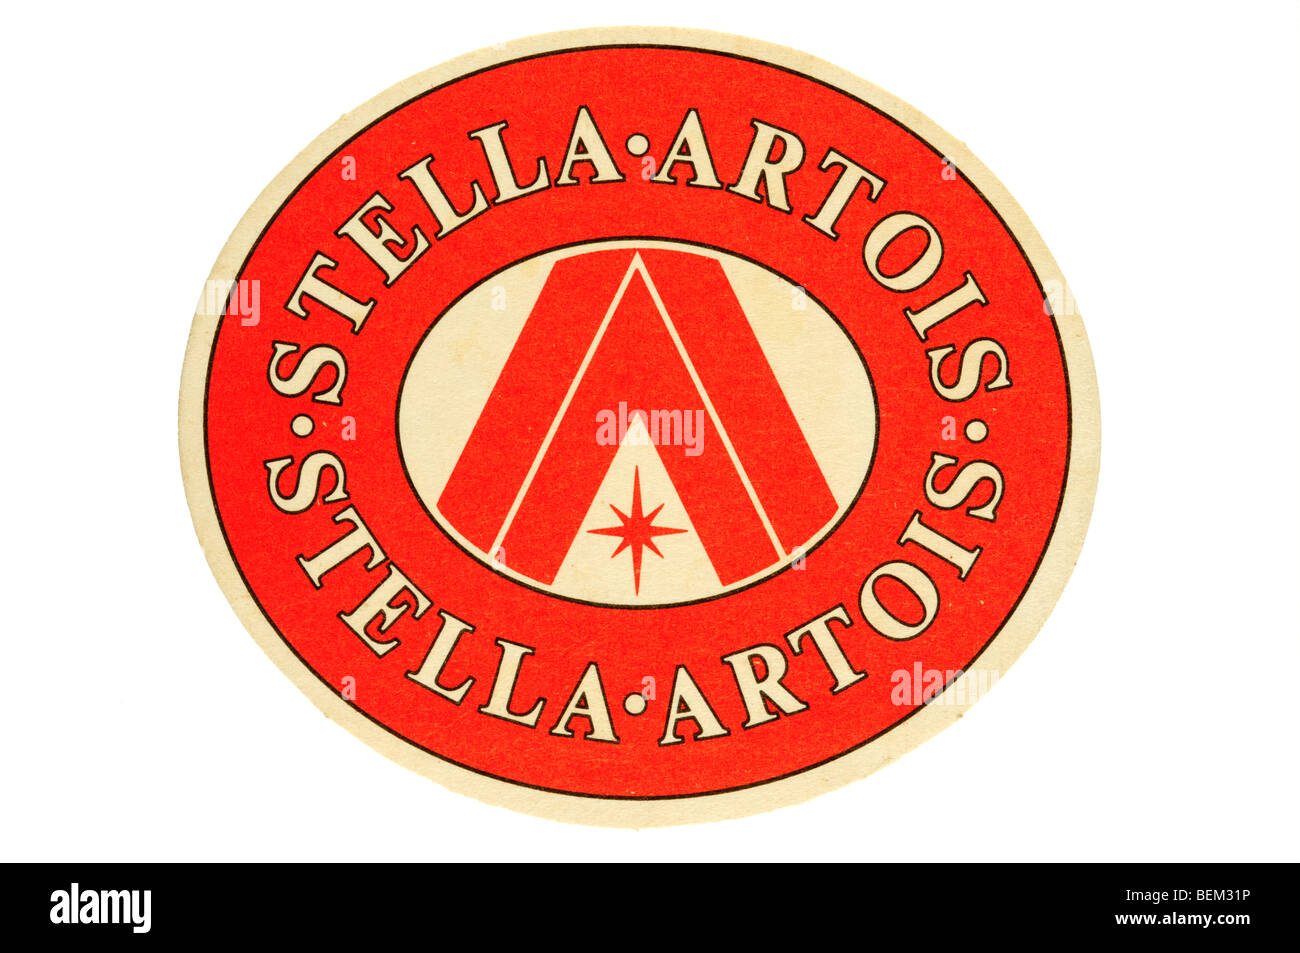 stella artois Stock Photo